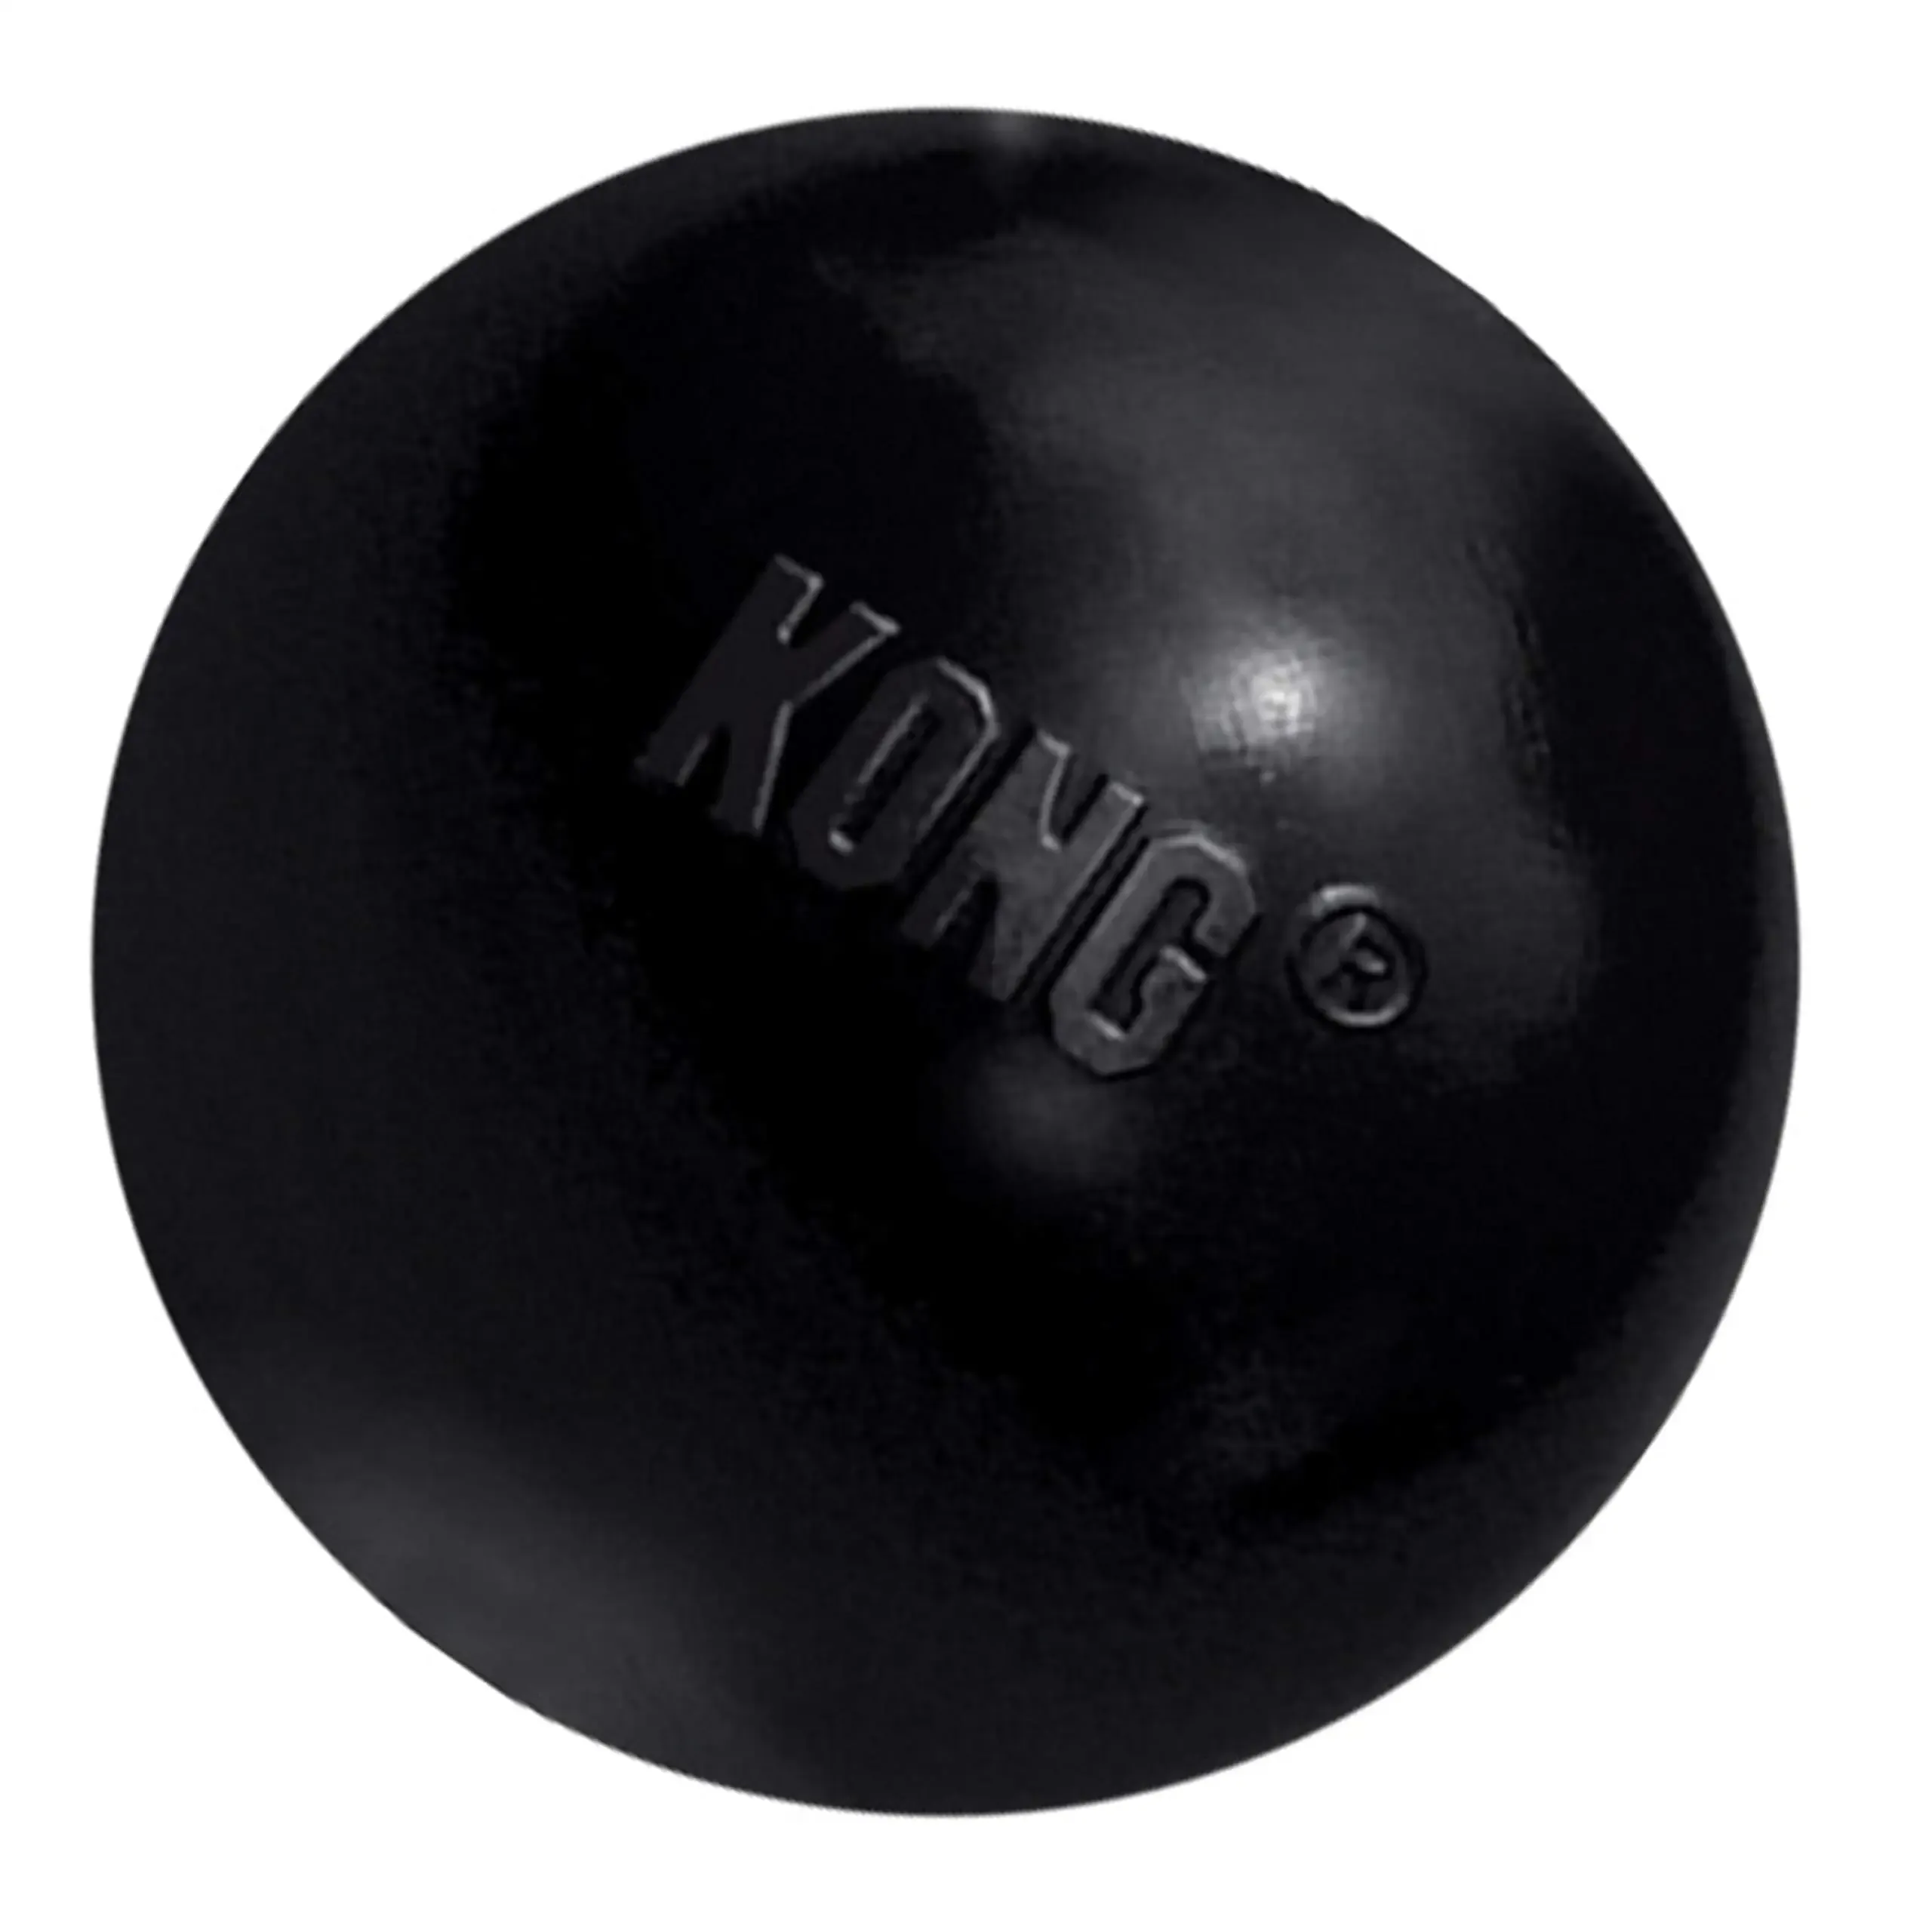 Speelgoed KONG Extreme Ball Duurzaam rubberen hondenspeelgoed voor krachtige kauwers, zwart